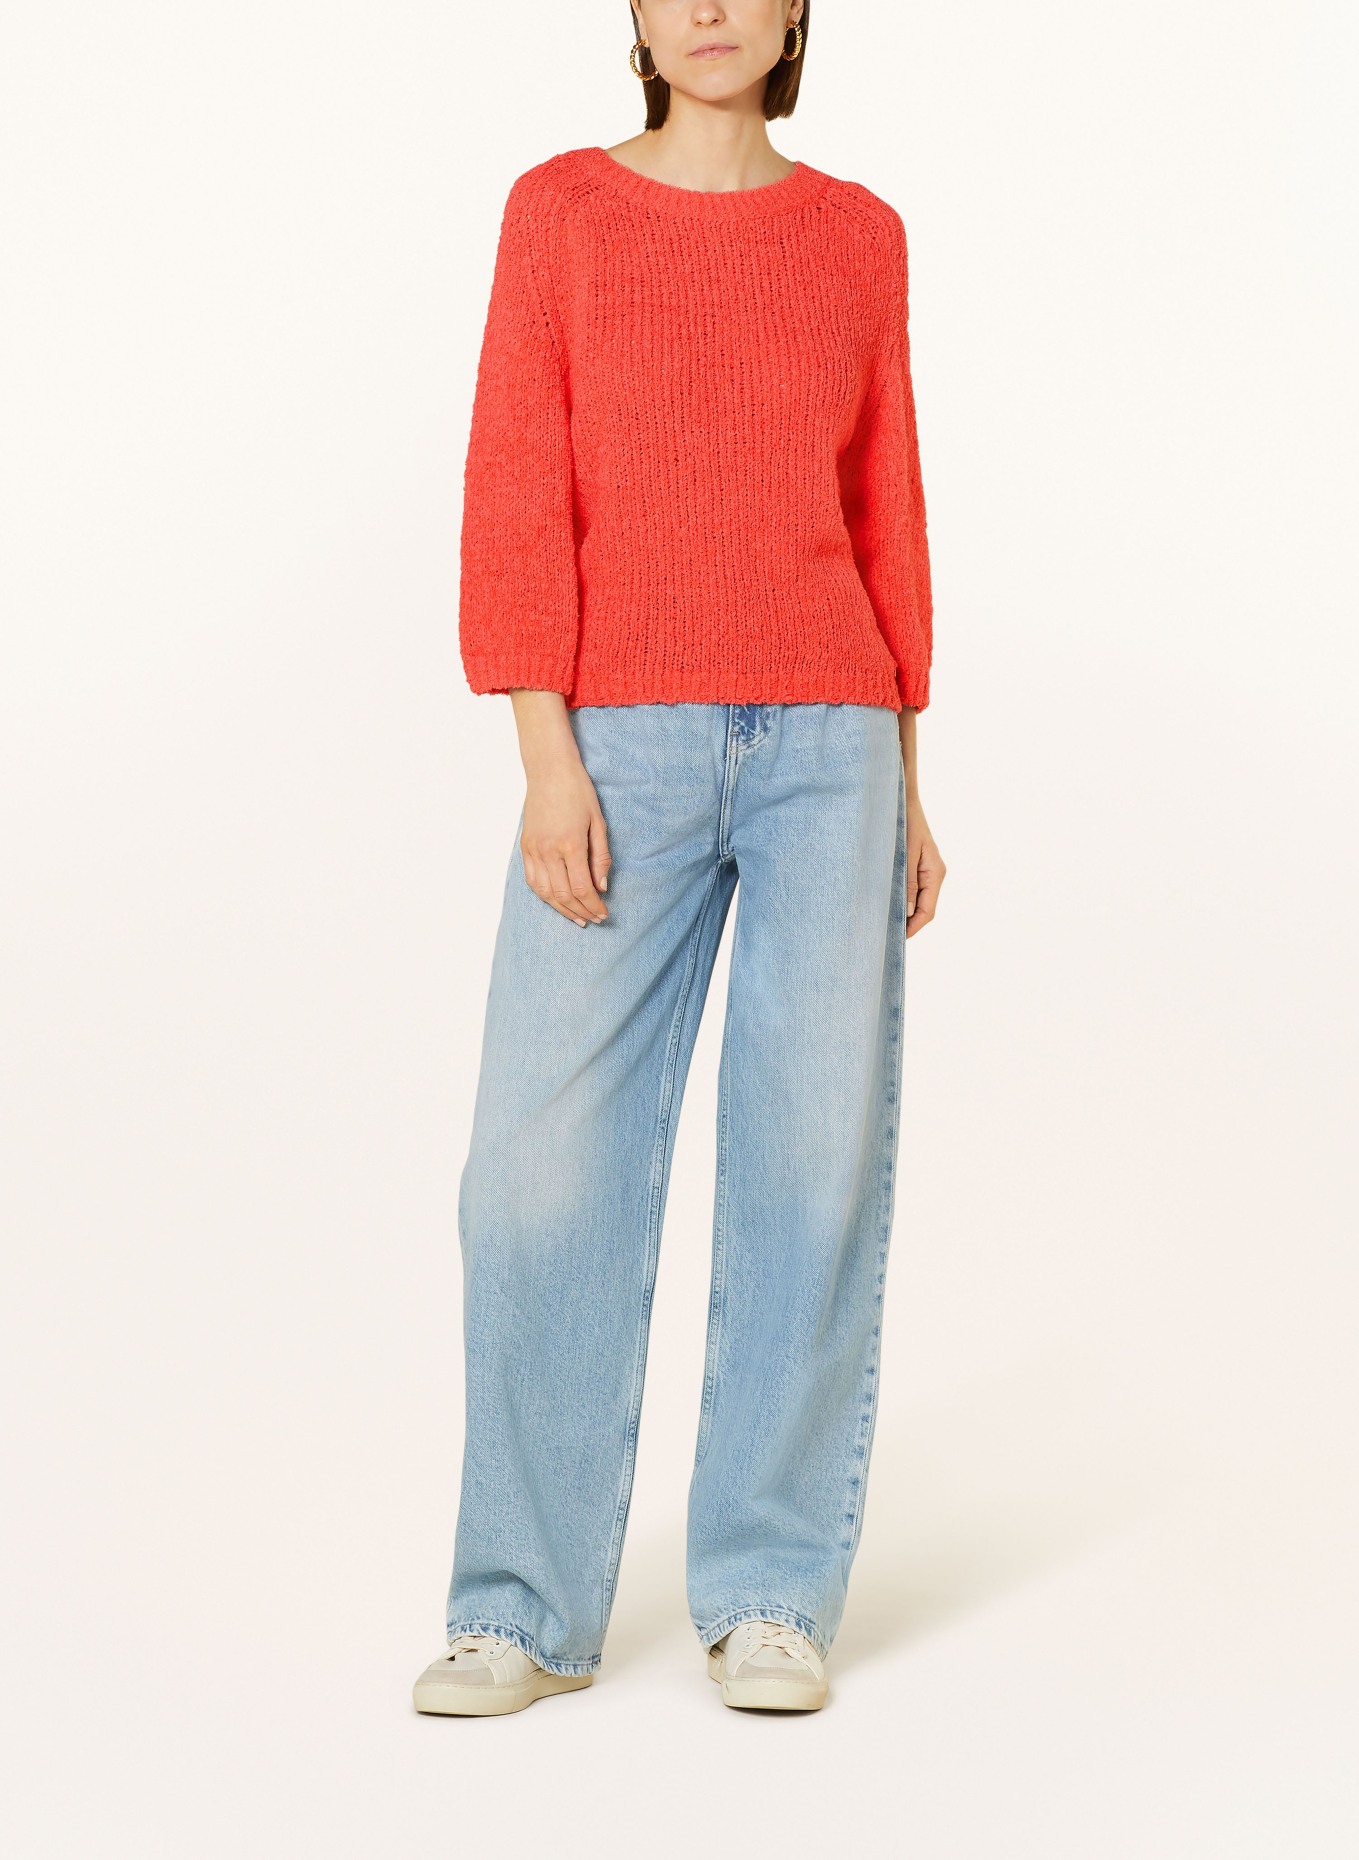 monari Sweater, Color: SALMON (Image 2)